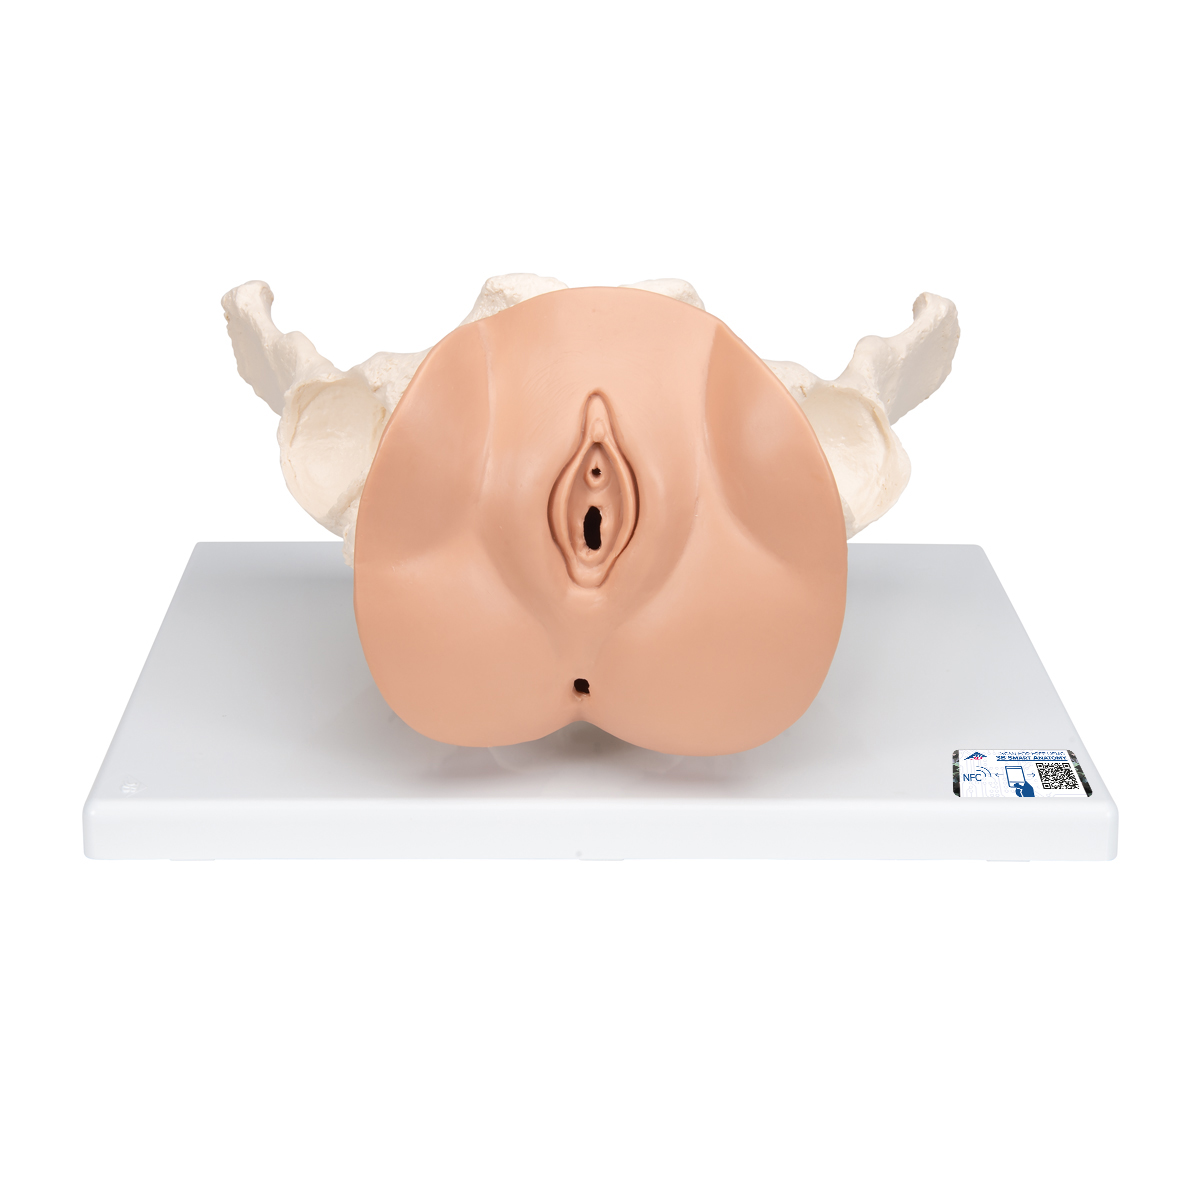 Weibliches Beckenskelett Modell mit Genitalorganen, 3 teilig - 3B Smart Anatomy, Bestellnummer 1000335, L31, 3B Scientific